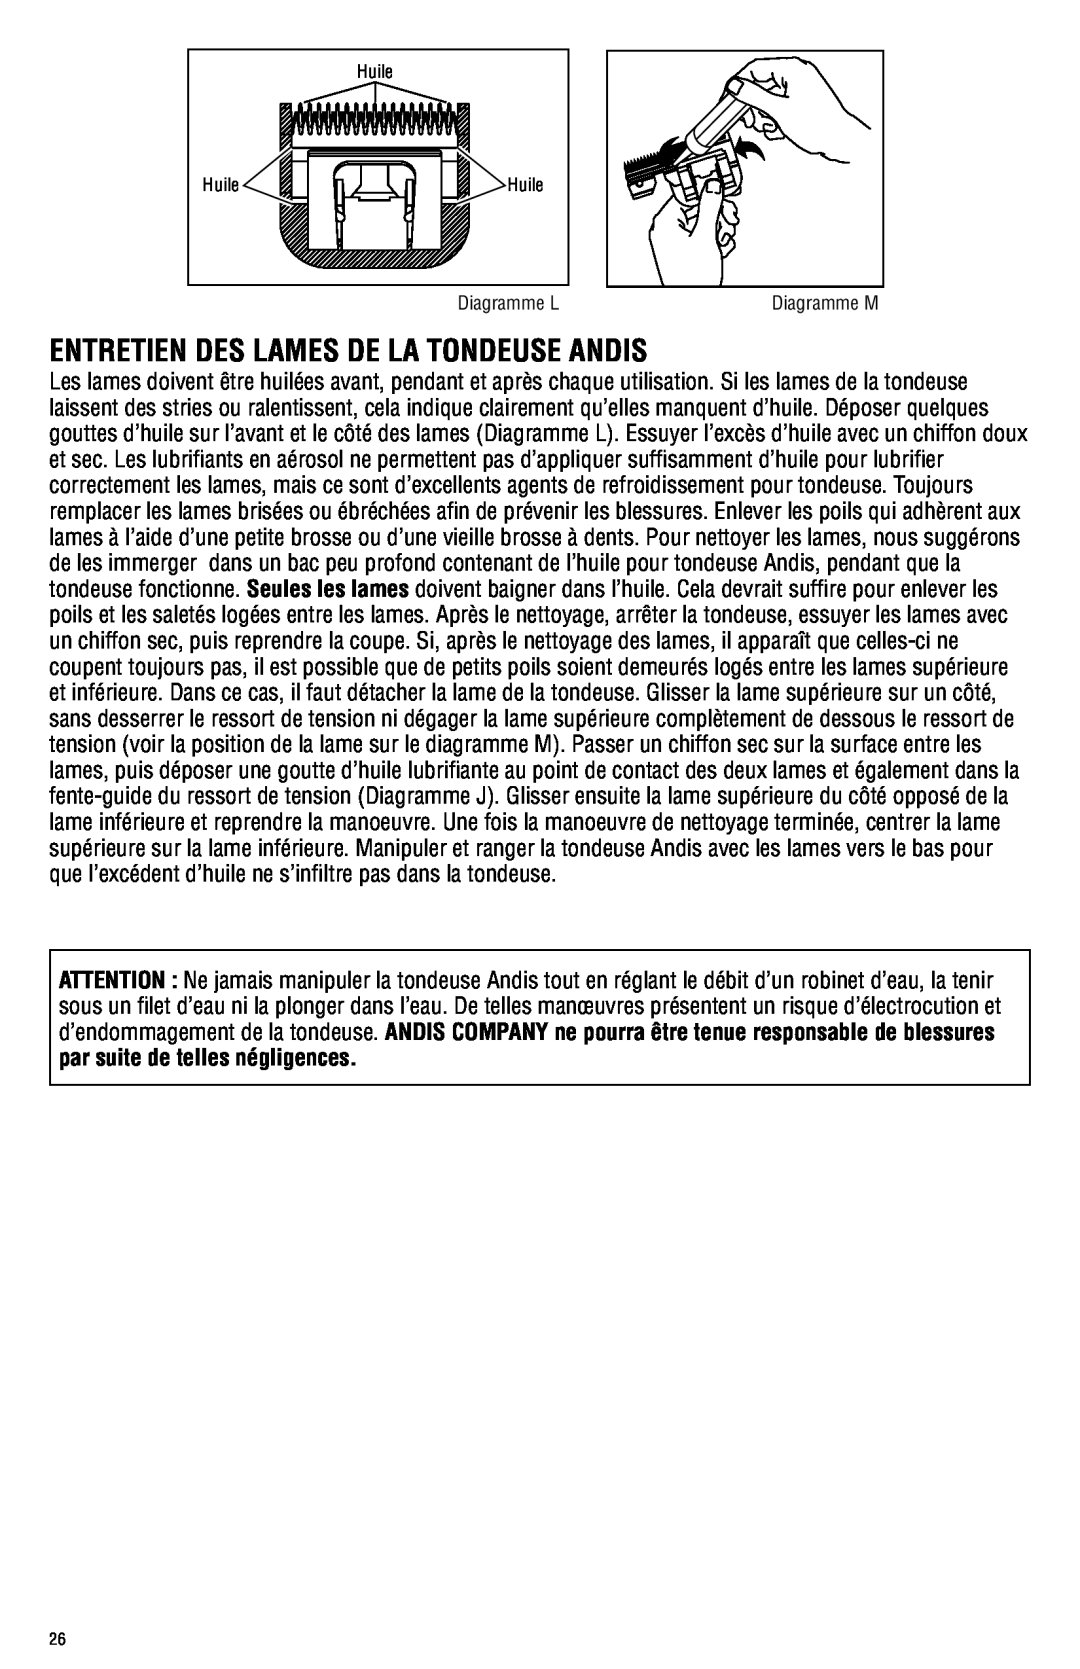 Andis Company AGRC manual Entretien Des Lames De La Tondeuse Andis, par suite de telles négligences 